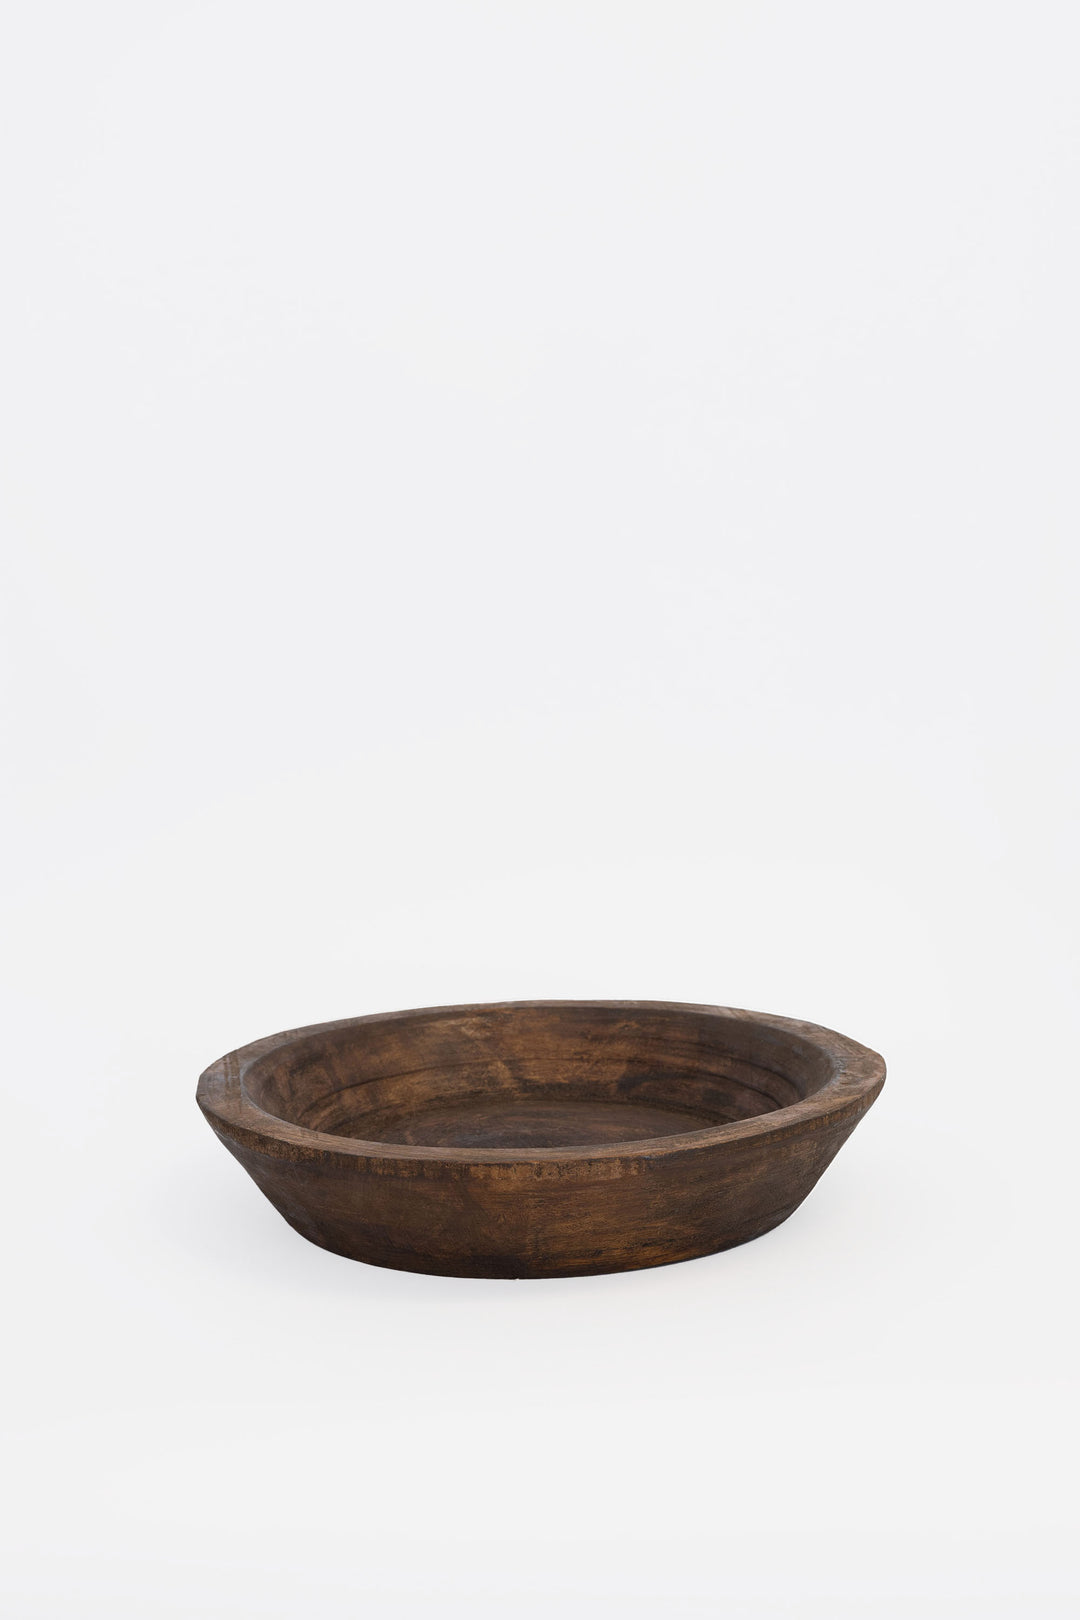 Unique Wooden Bowl